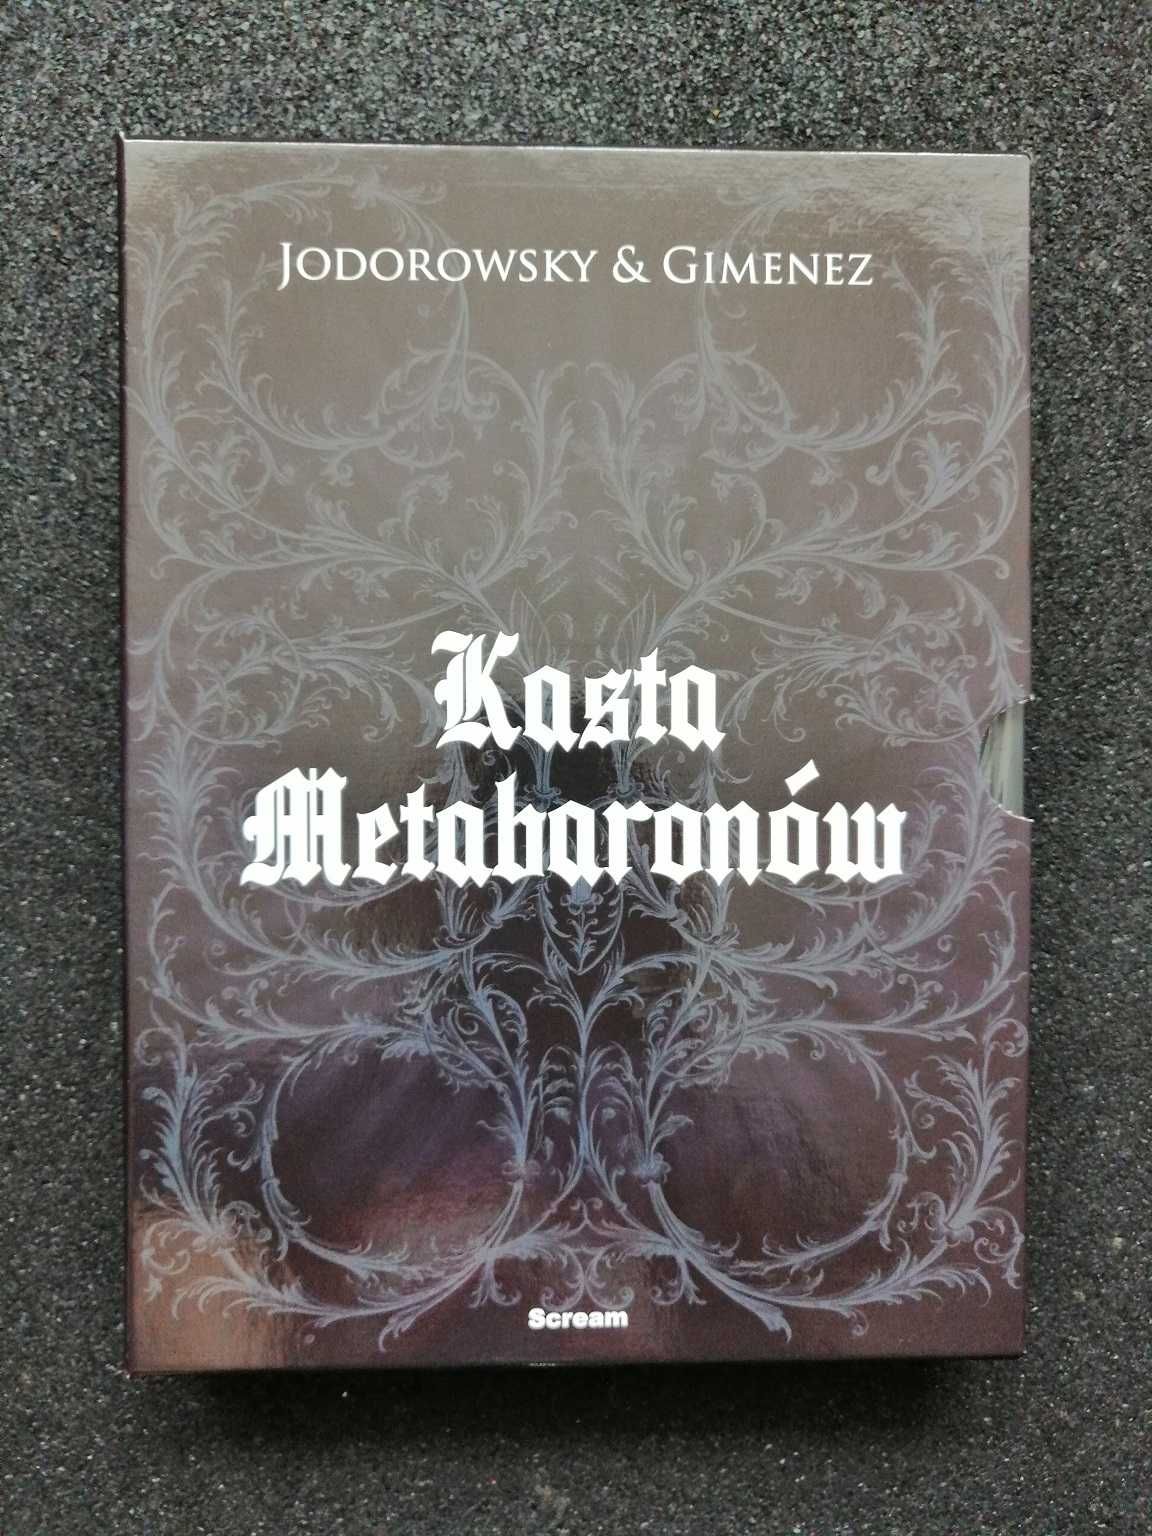 NOWE FOLIA - KASTA METABARONÓW kolekcjonerskie wydanie z boxem !